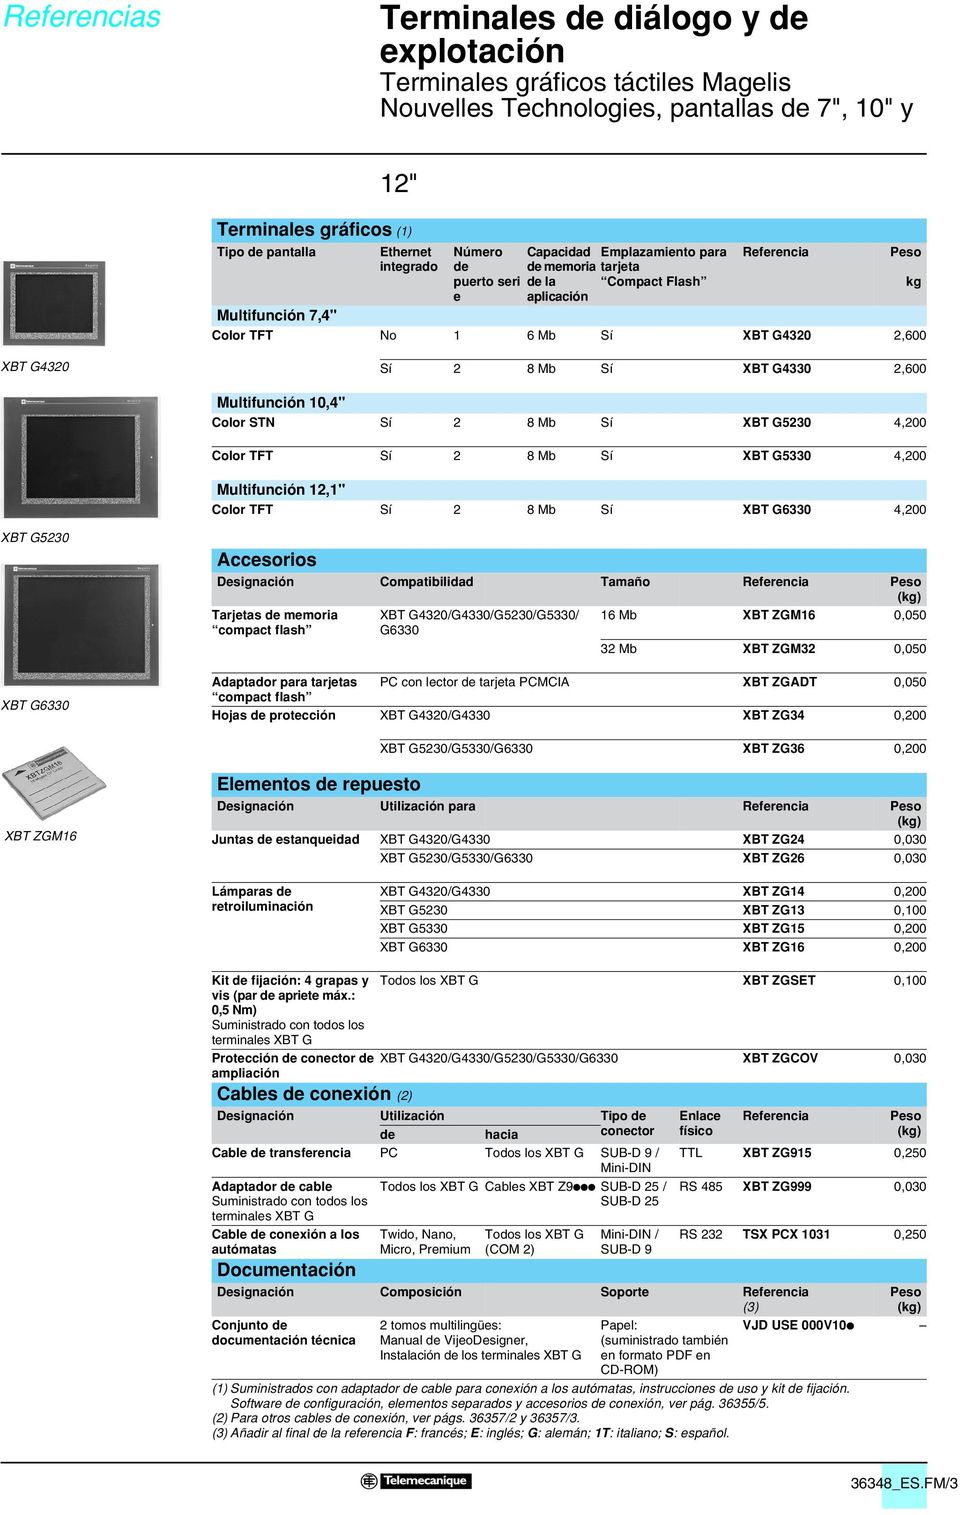 530 4,00 Color TFT Sí 8 Mb Sí 5330 4,00 Multifunción 1,1" Color TFT Sí 8 Mb Sí 6330 4,00 530 6330 Accesorios Designación Compatibilidad Tamaño Referencia Peso (kg) Tarjetas de memoria compact flash